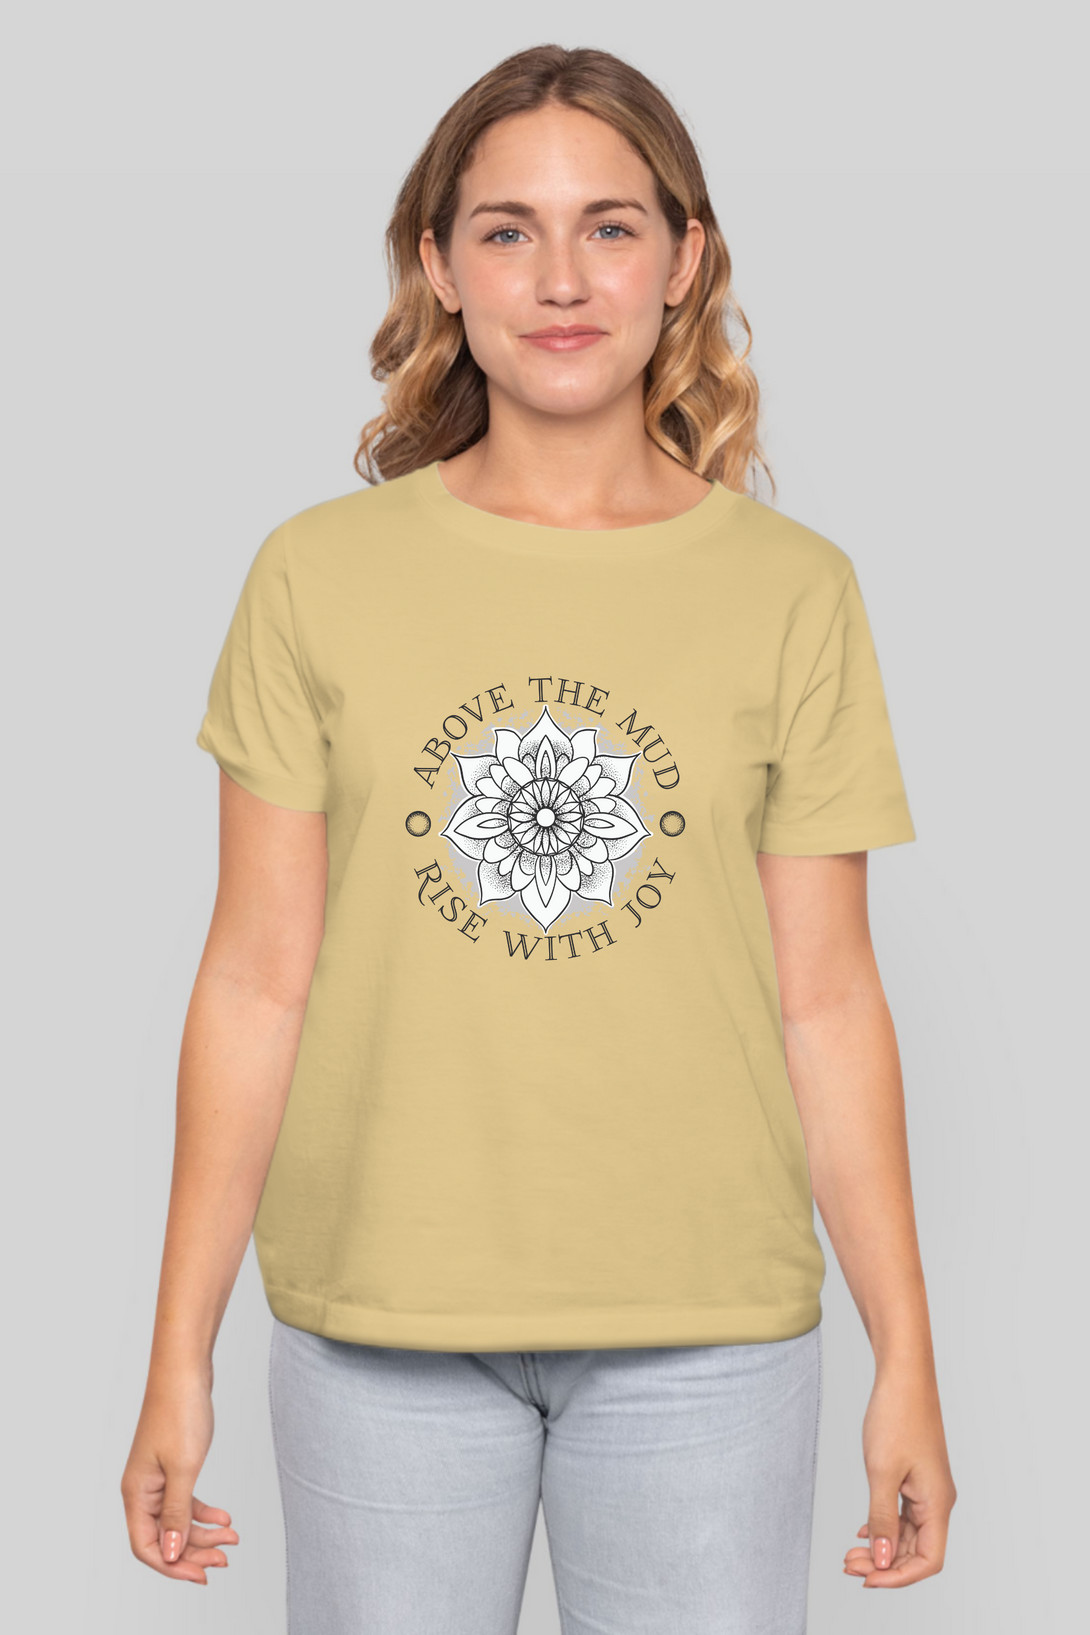 Mandala Lotus Printed T-Shirt For Women - WowWaves - 9